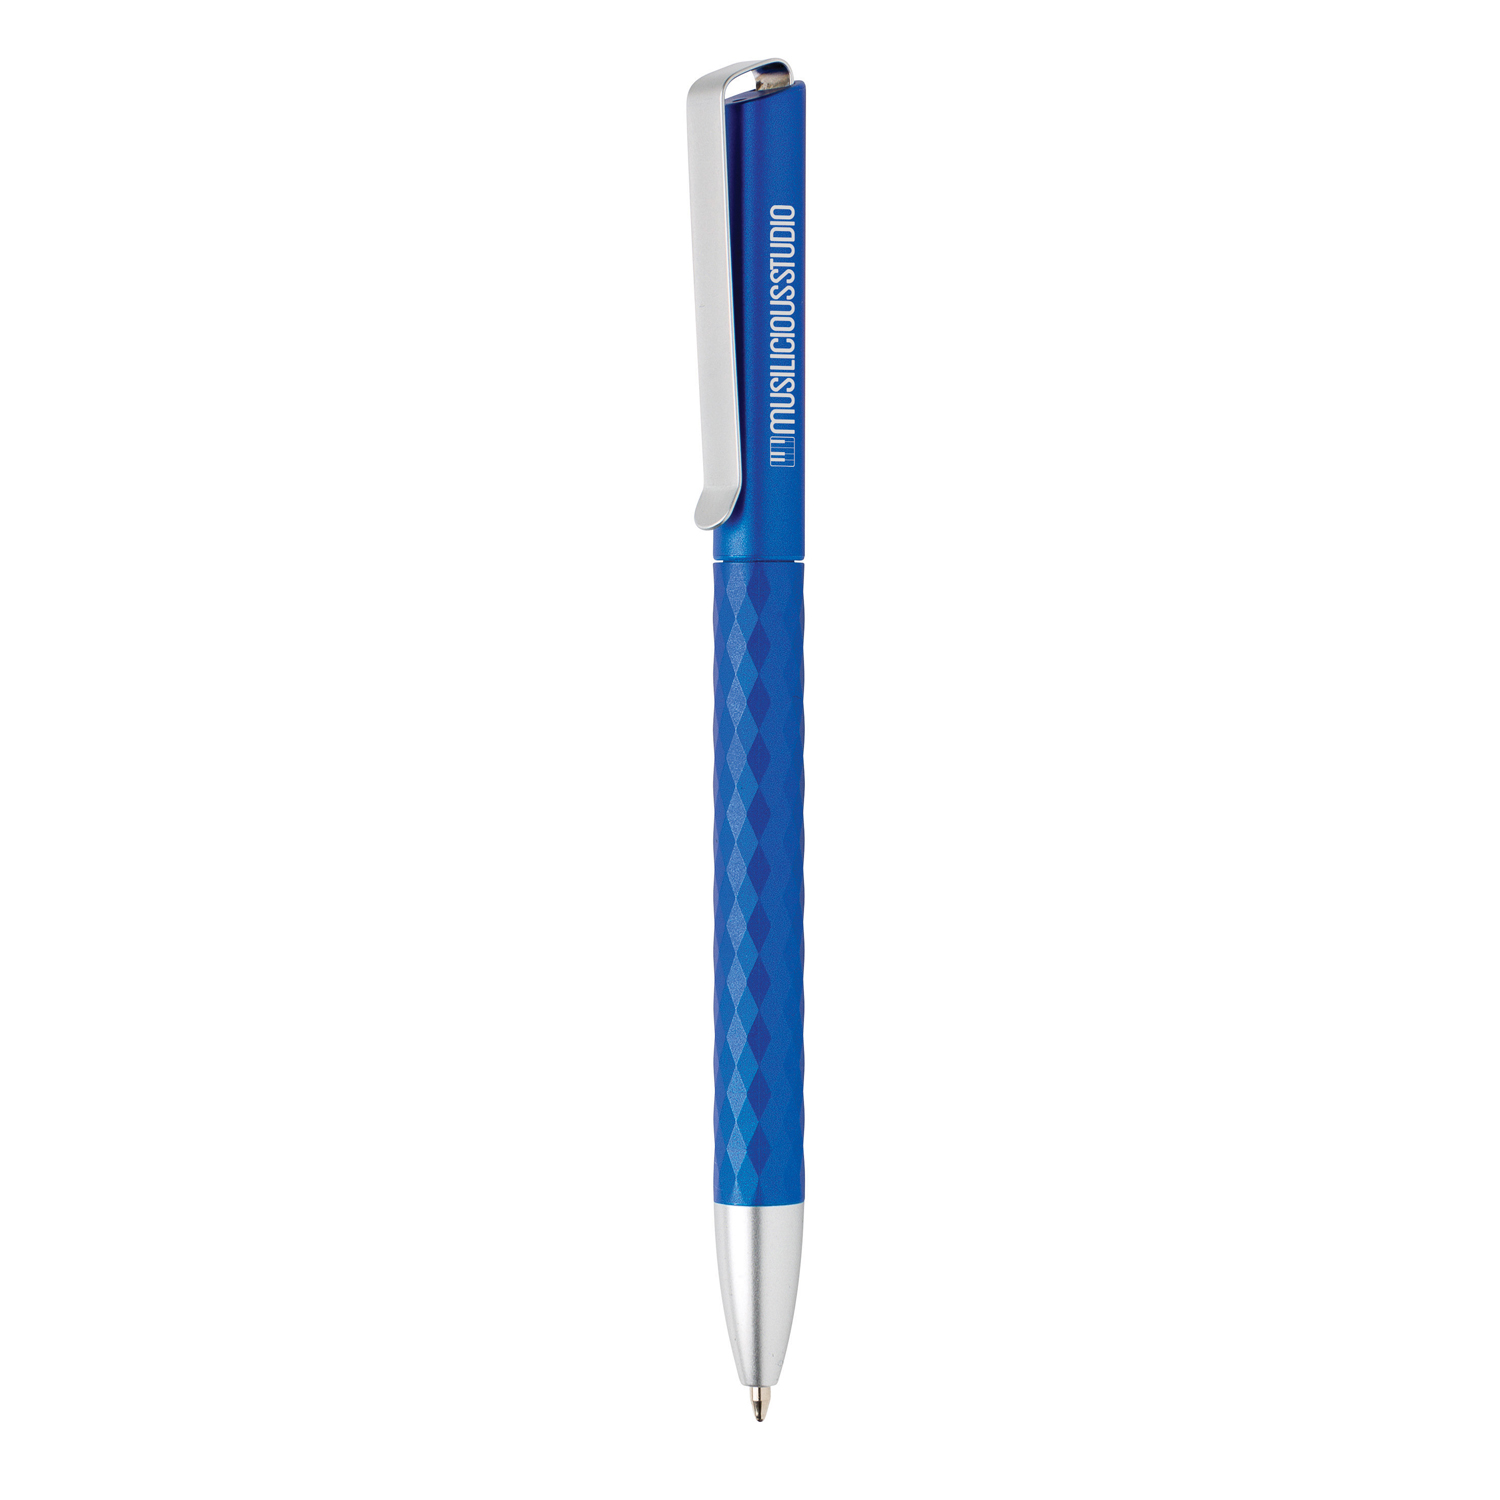 Ручка X3.1, синий